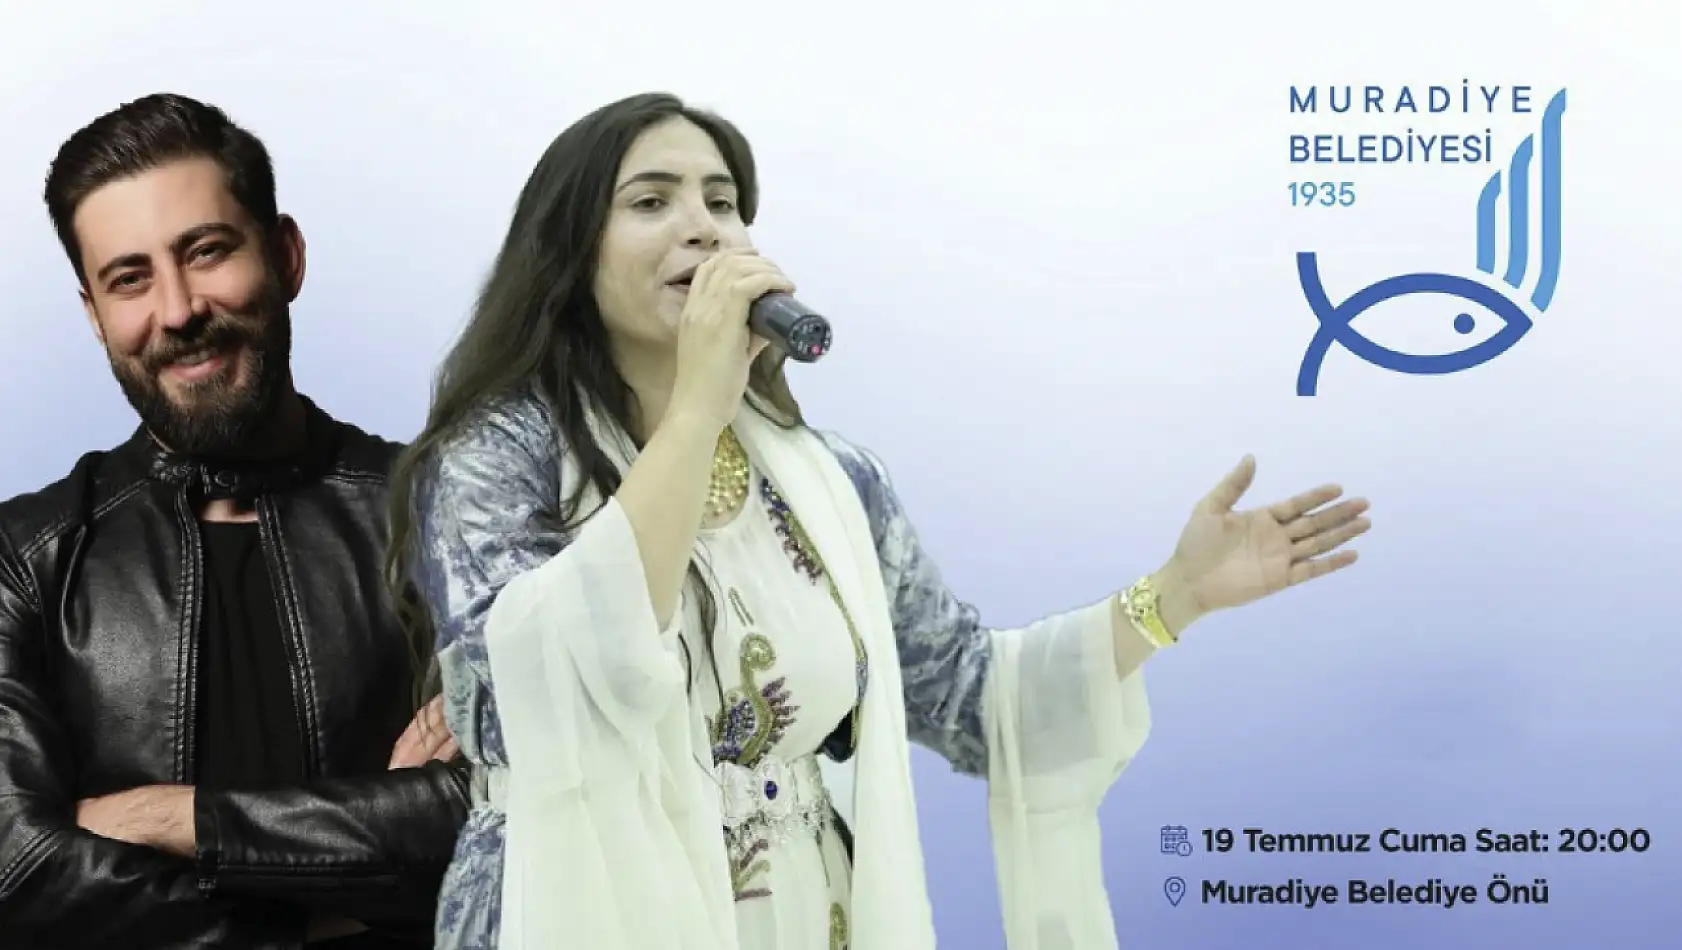 Muradiye Belediyesi ücretsiz konser düzenliyor